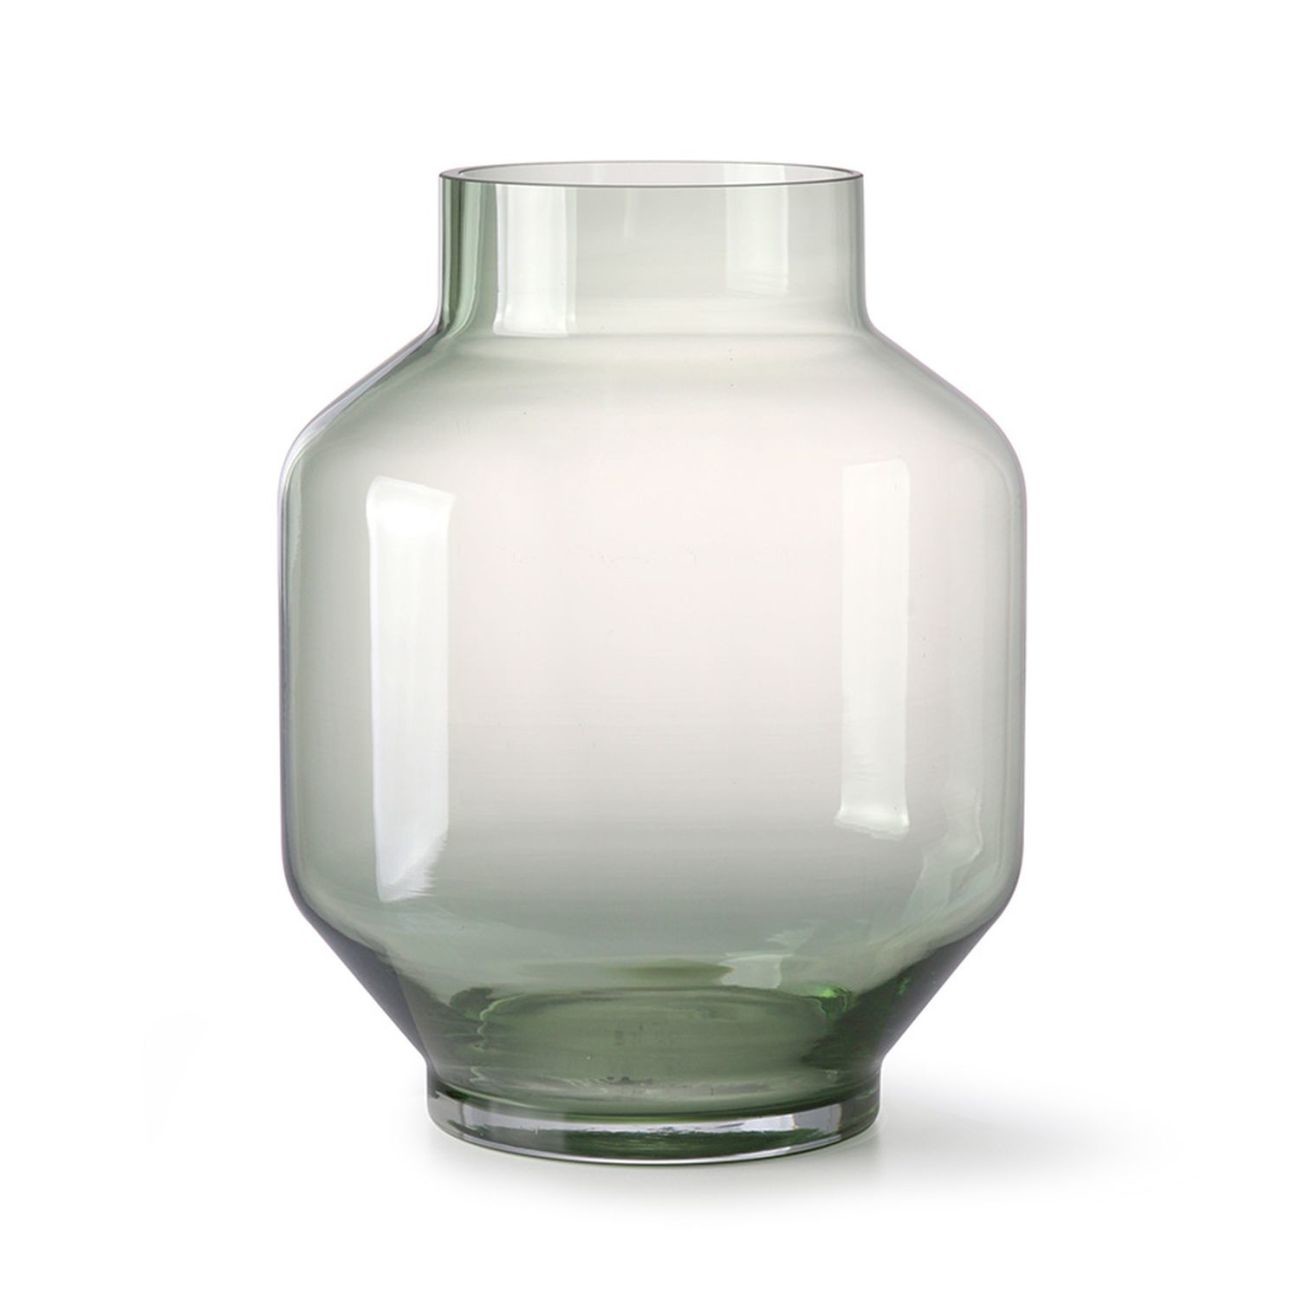 HK living green glass Vase - L